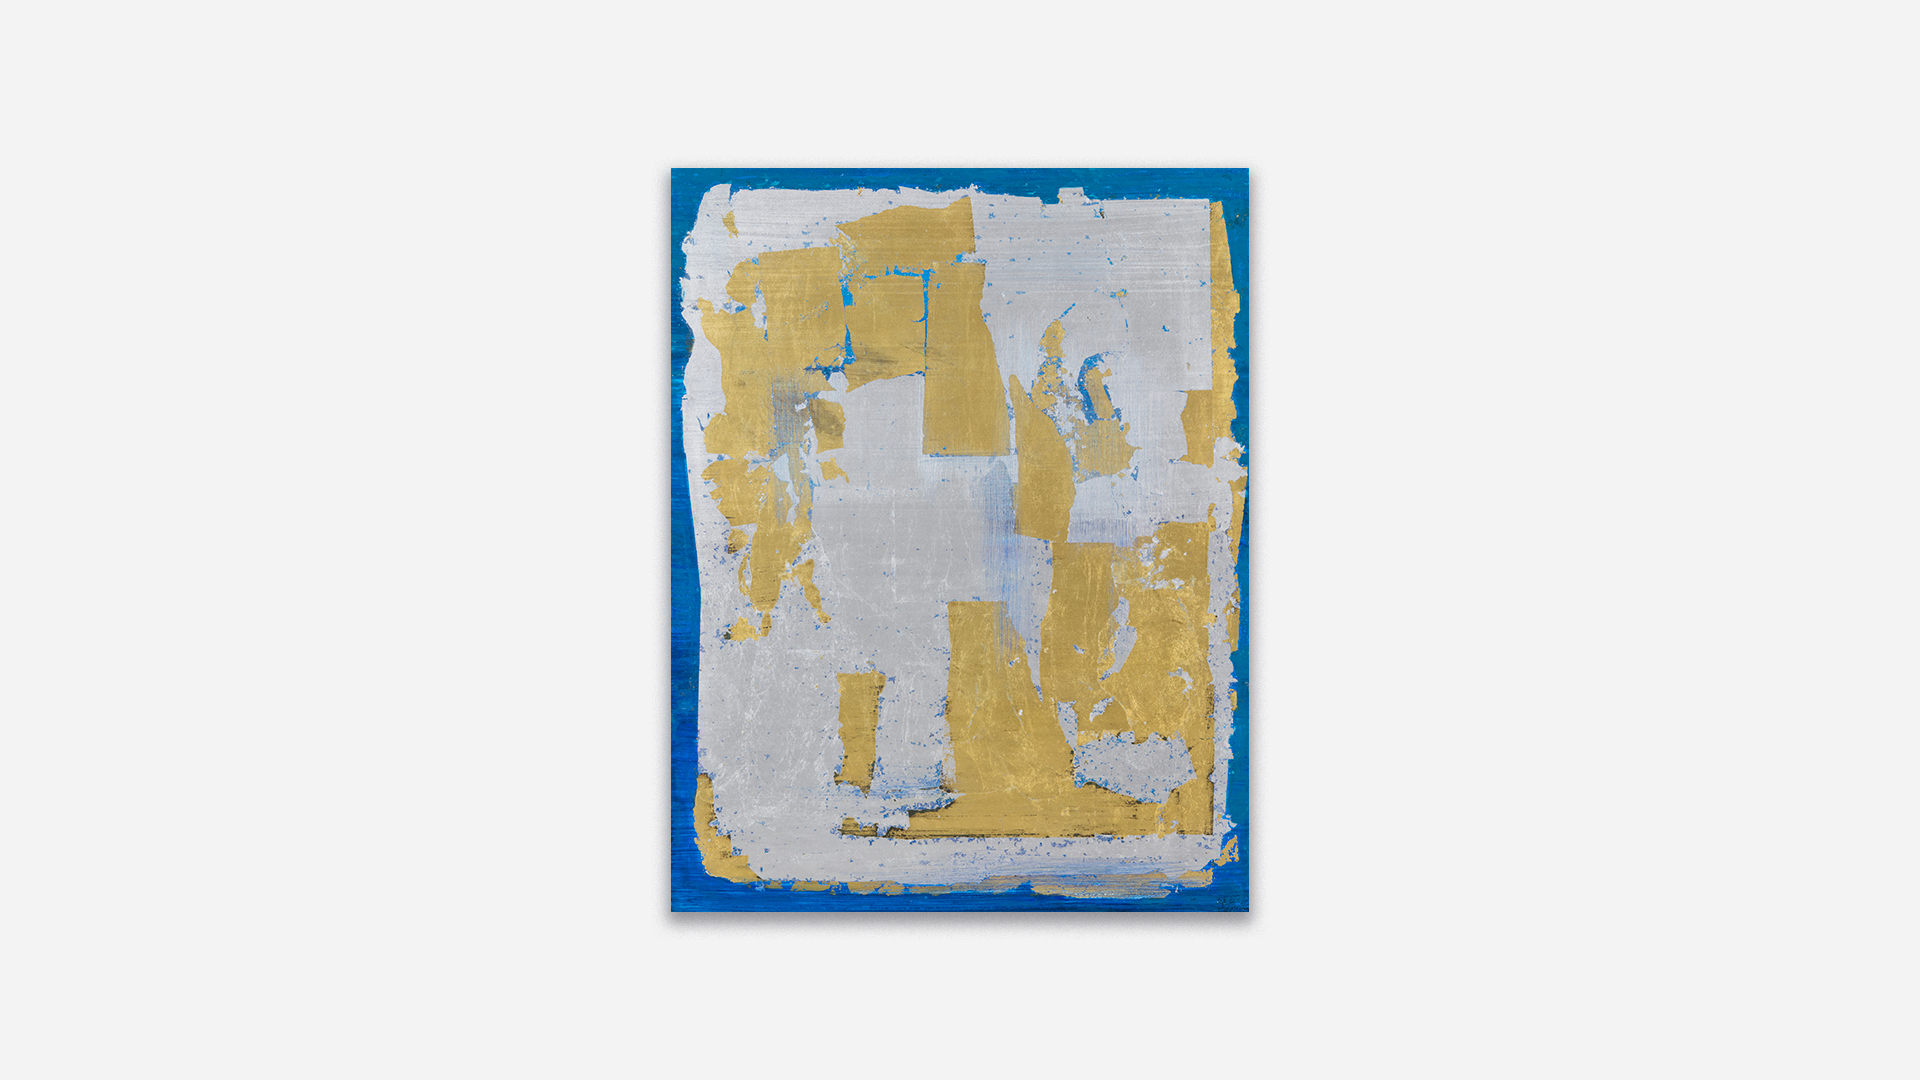 Anna-Eva Bergman, N°77-1961 Bleu avec argent et or (fantastique), 1961, Tempera and metal leaf on cardboard mounted on canvas, 64 x 49.5 cm